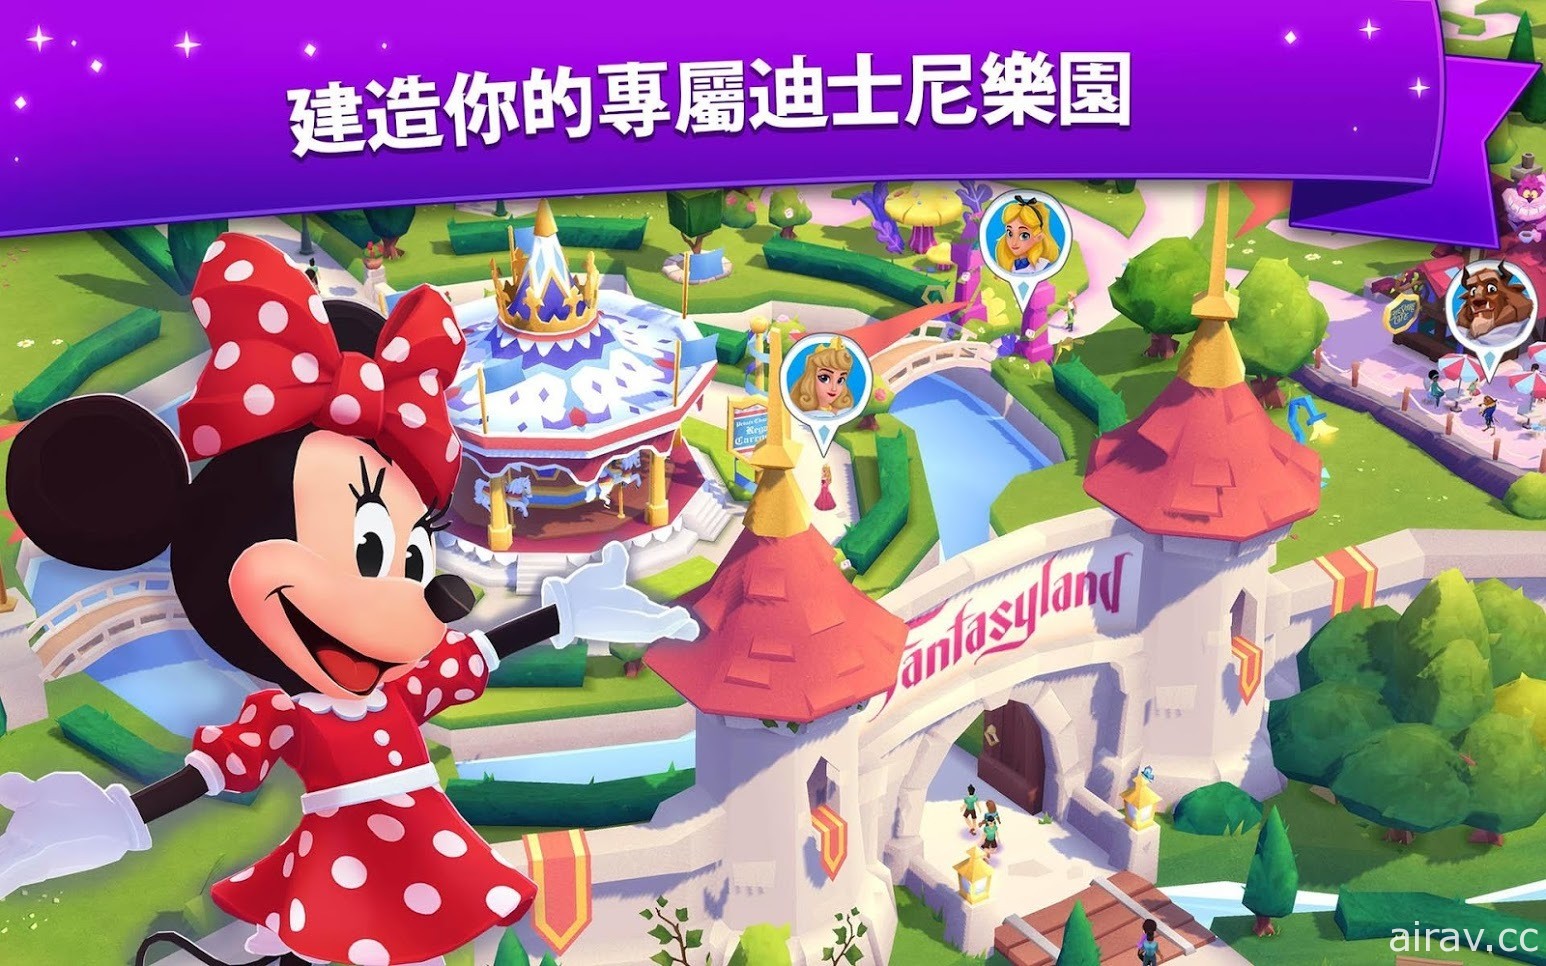 《迪士尼奇妙世界》于 Google Play 商店开放预先注册 亲手打造专属迪士尼乐园